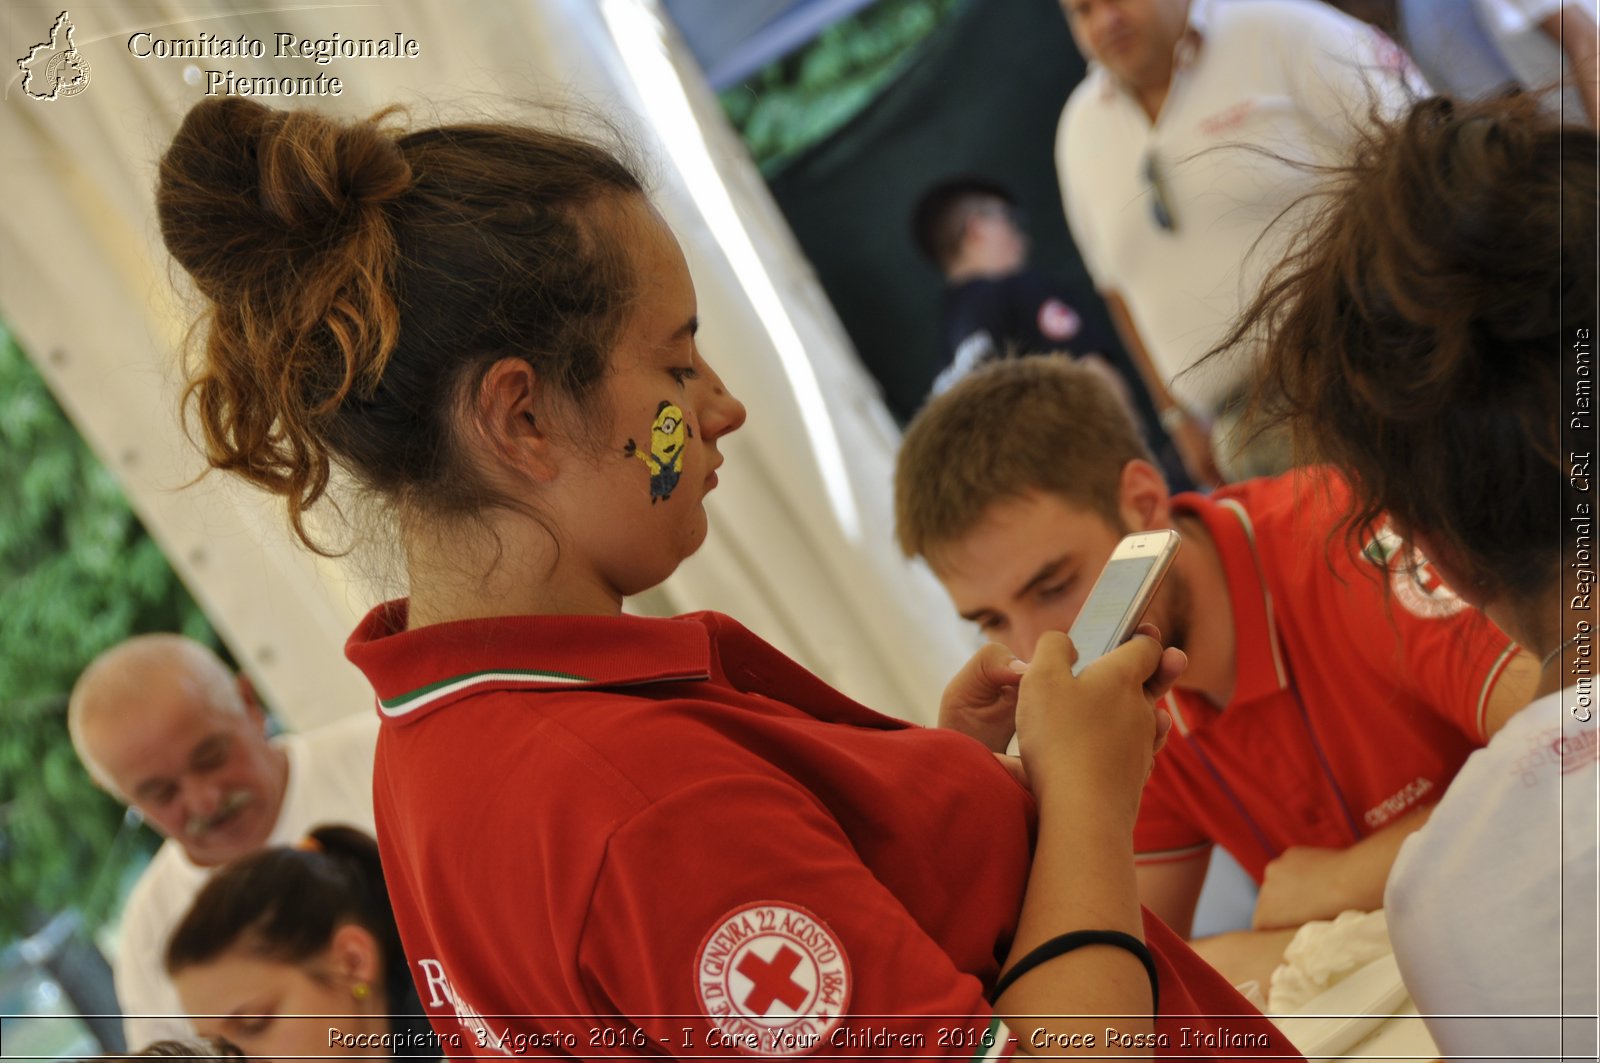 Roccapietra 3 Agosto 2016 - I Care Your Children 2016 - Croce Rossa Italiana- Comitato Regionale del Piemonte